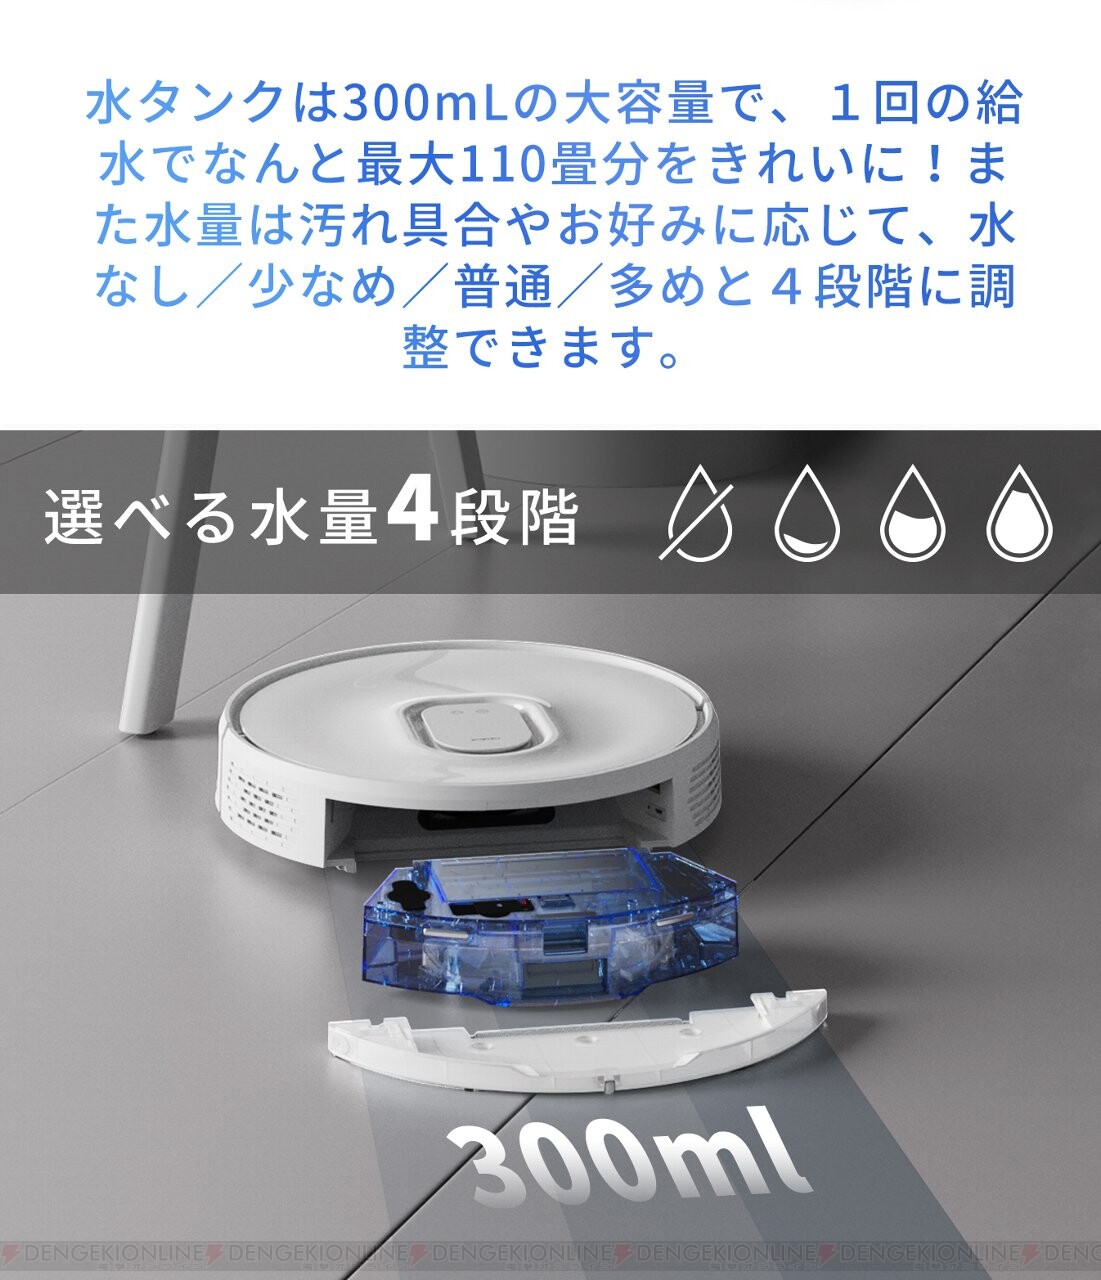 自動ゴミ収集 ロボット掃除機 Honiture Q6スイープロボット Wi-Fi接続 ...